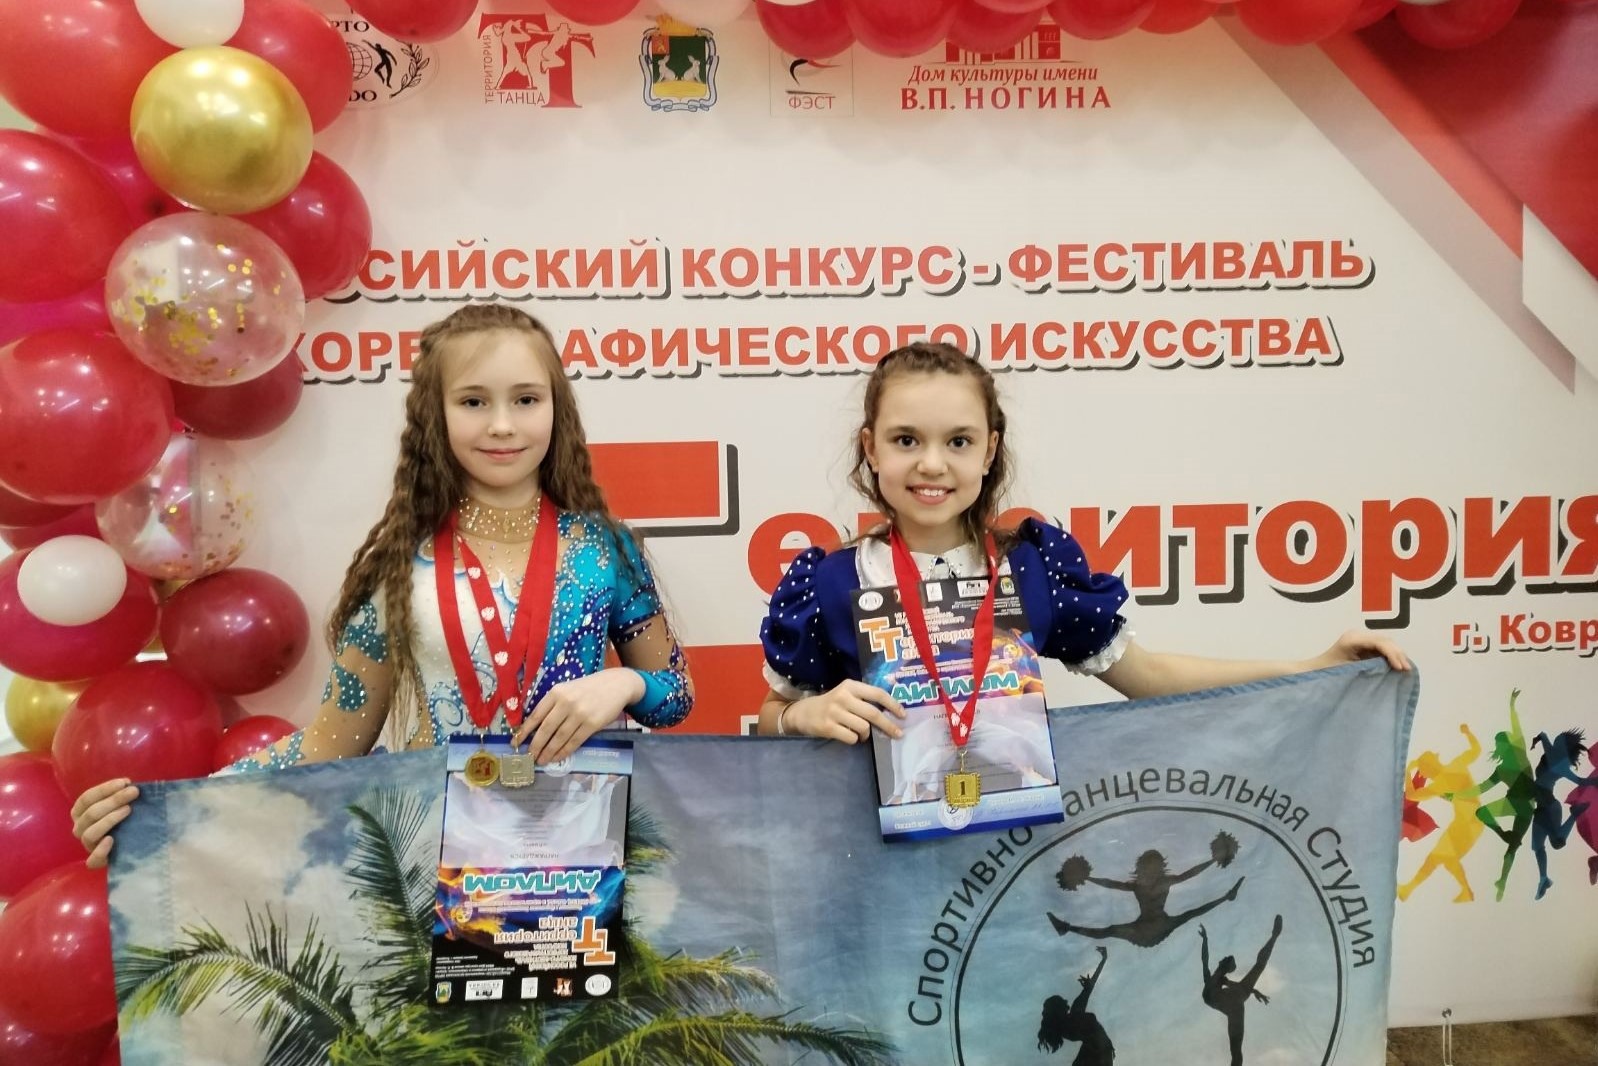 Два золота и серебро взяли юные танцовщицы в Коврове